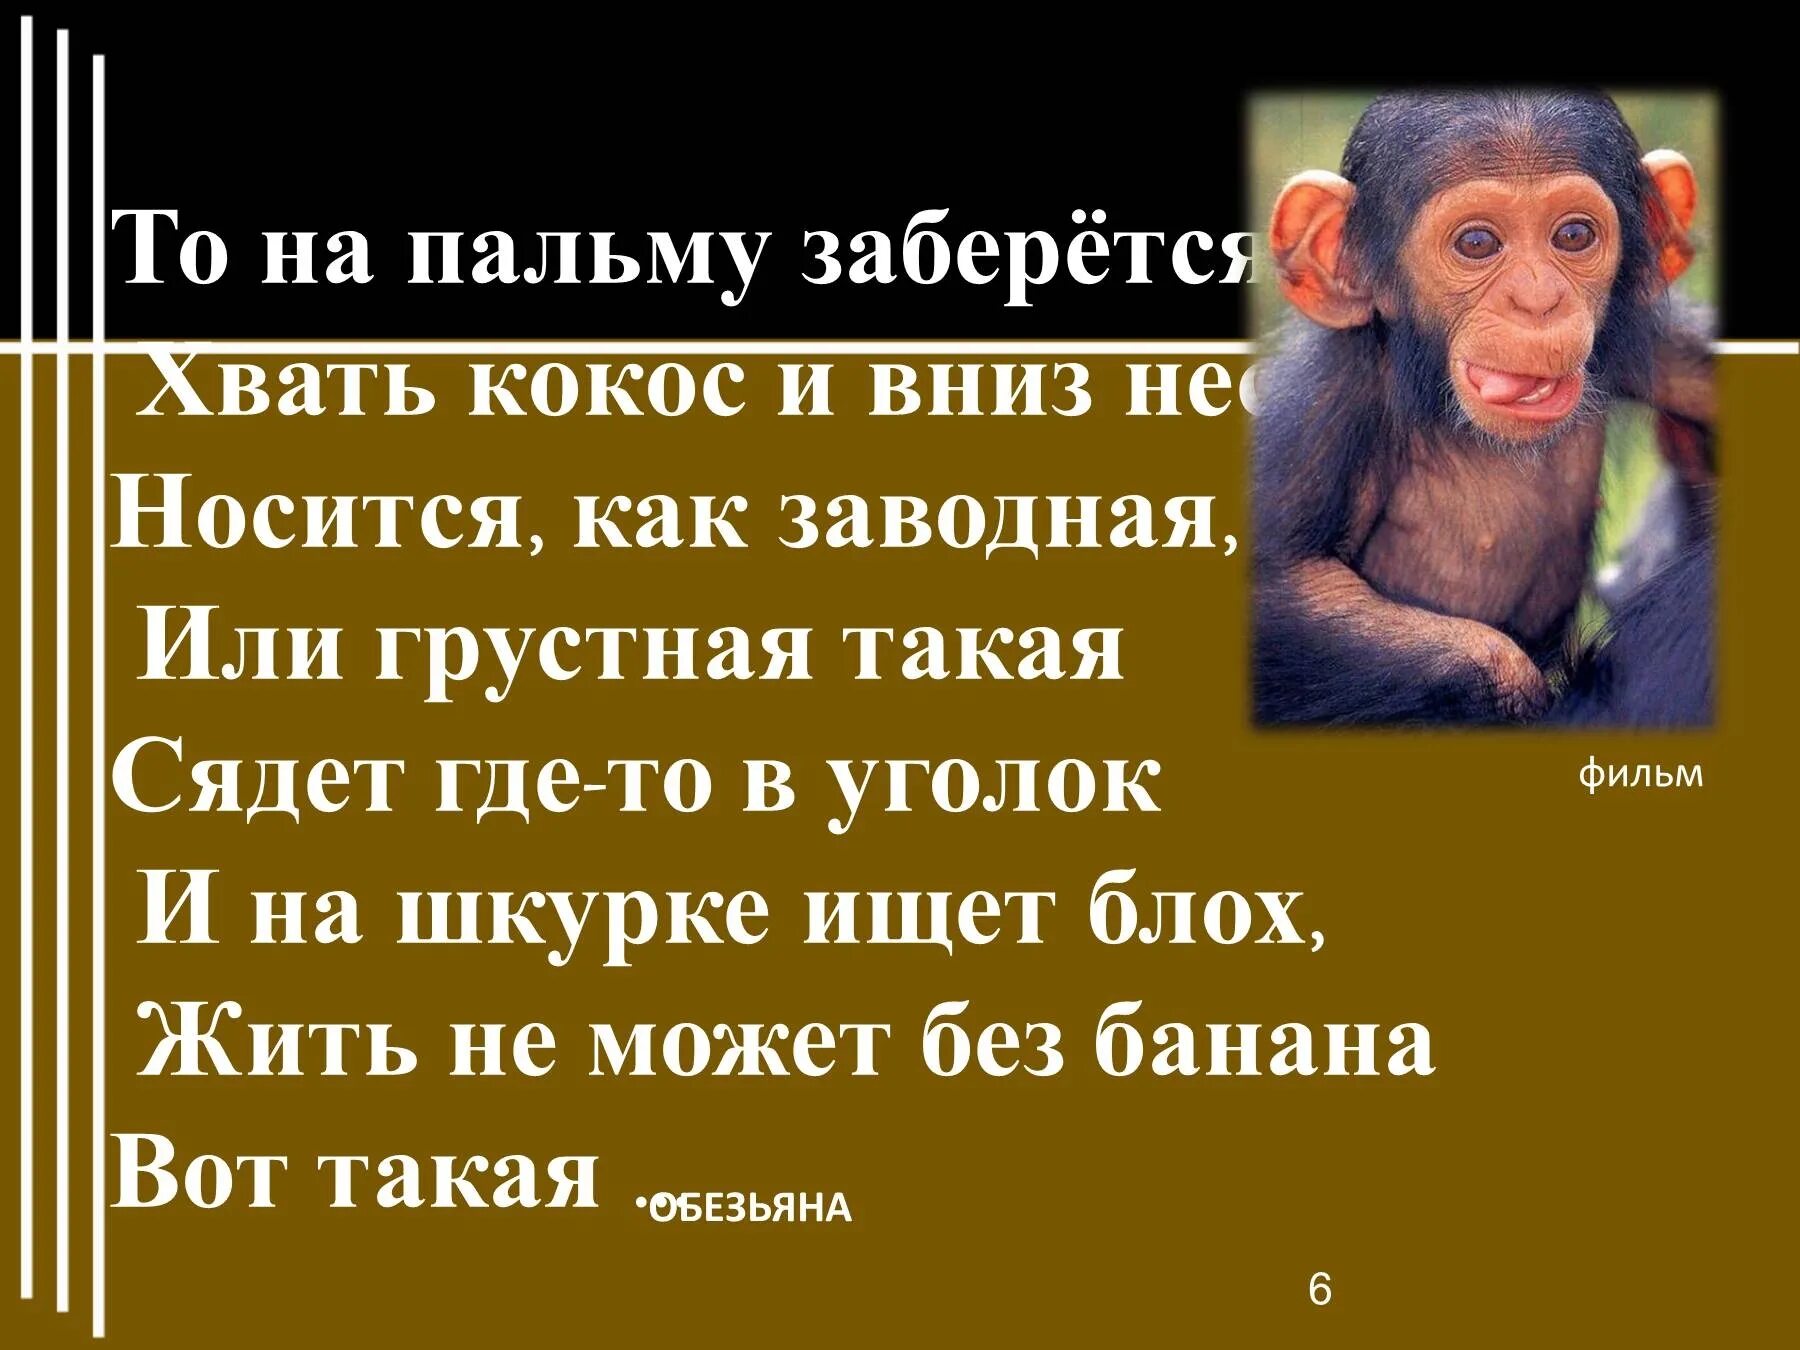 Житков про обезьянку. Предложение про обезьяну. Б Житков про обезьянку. Притча про обезьян.